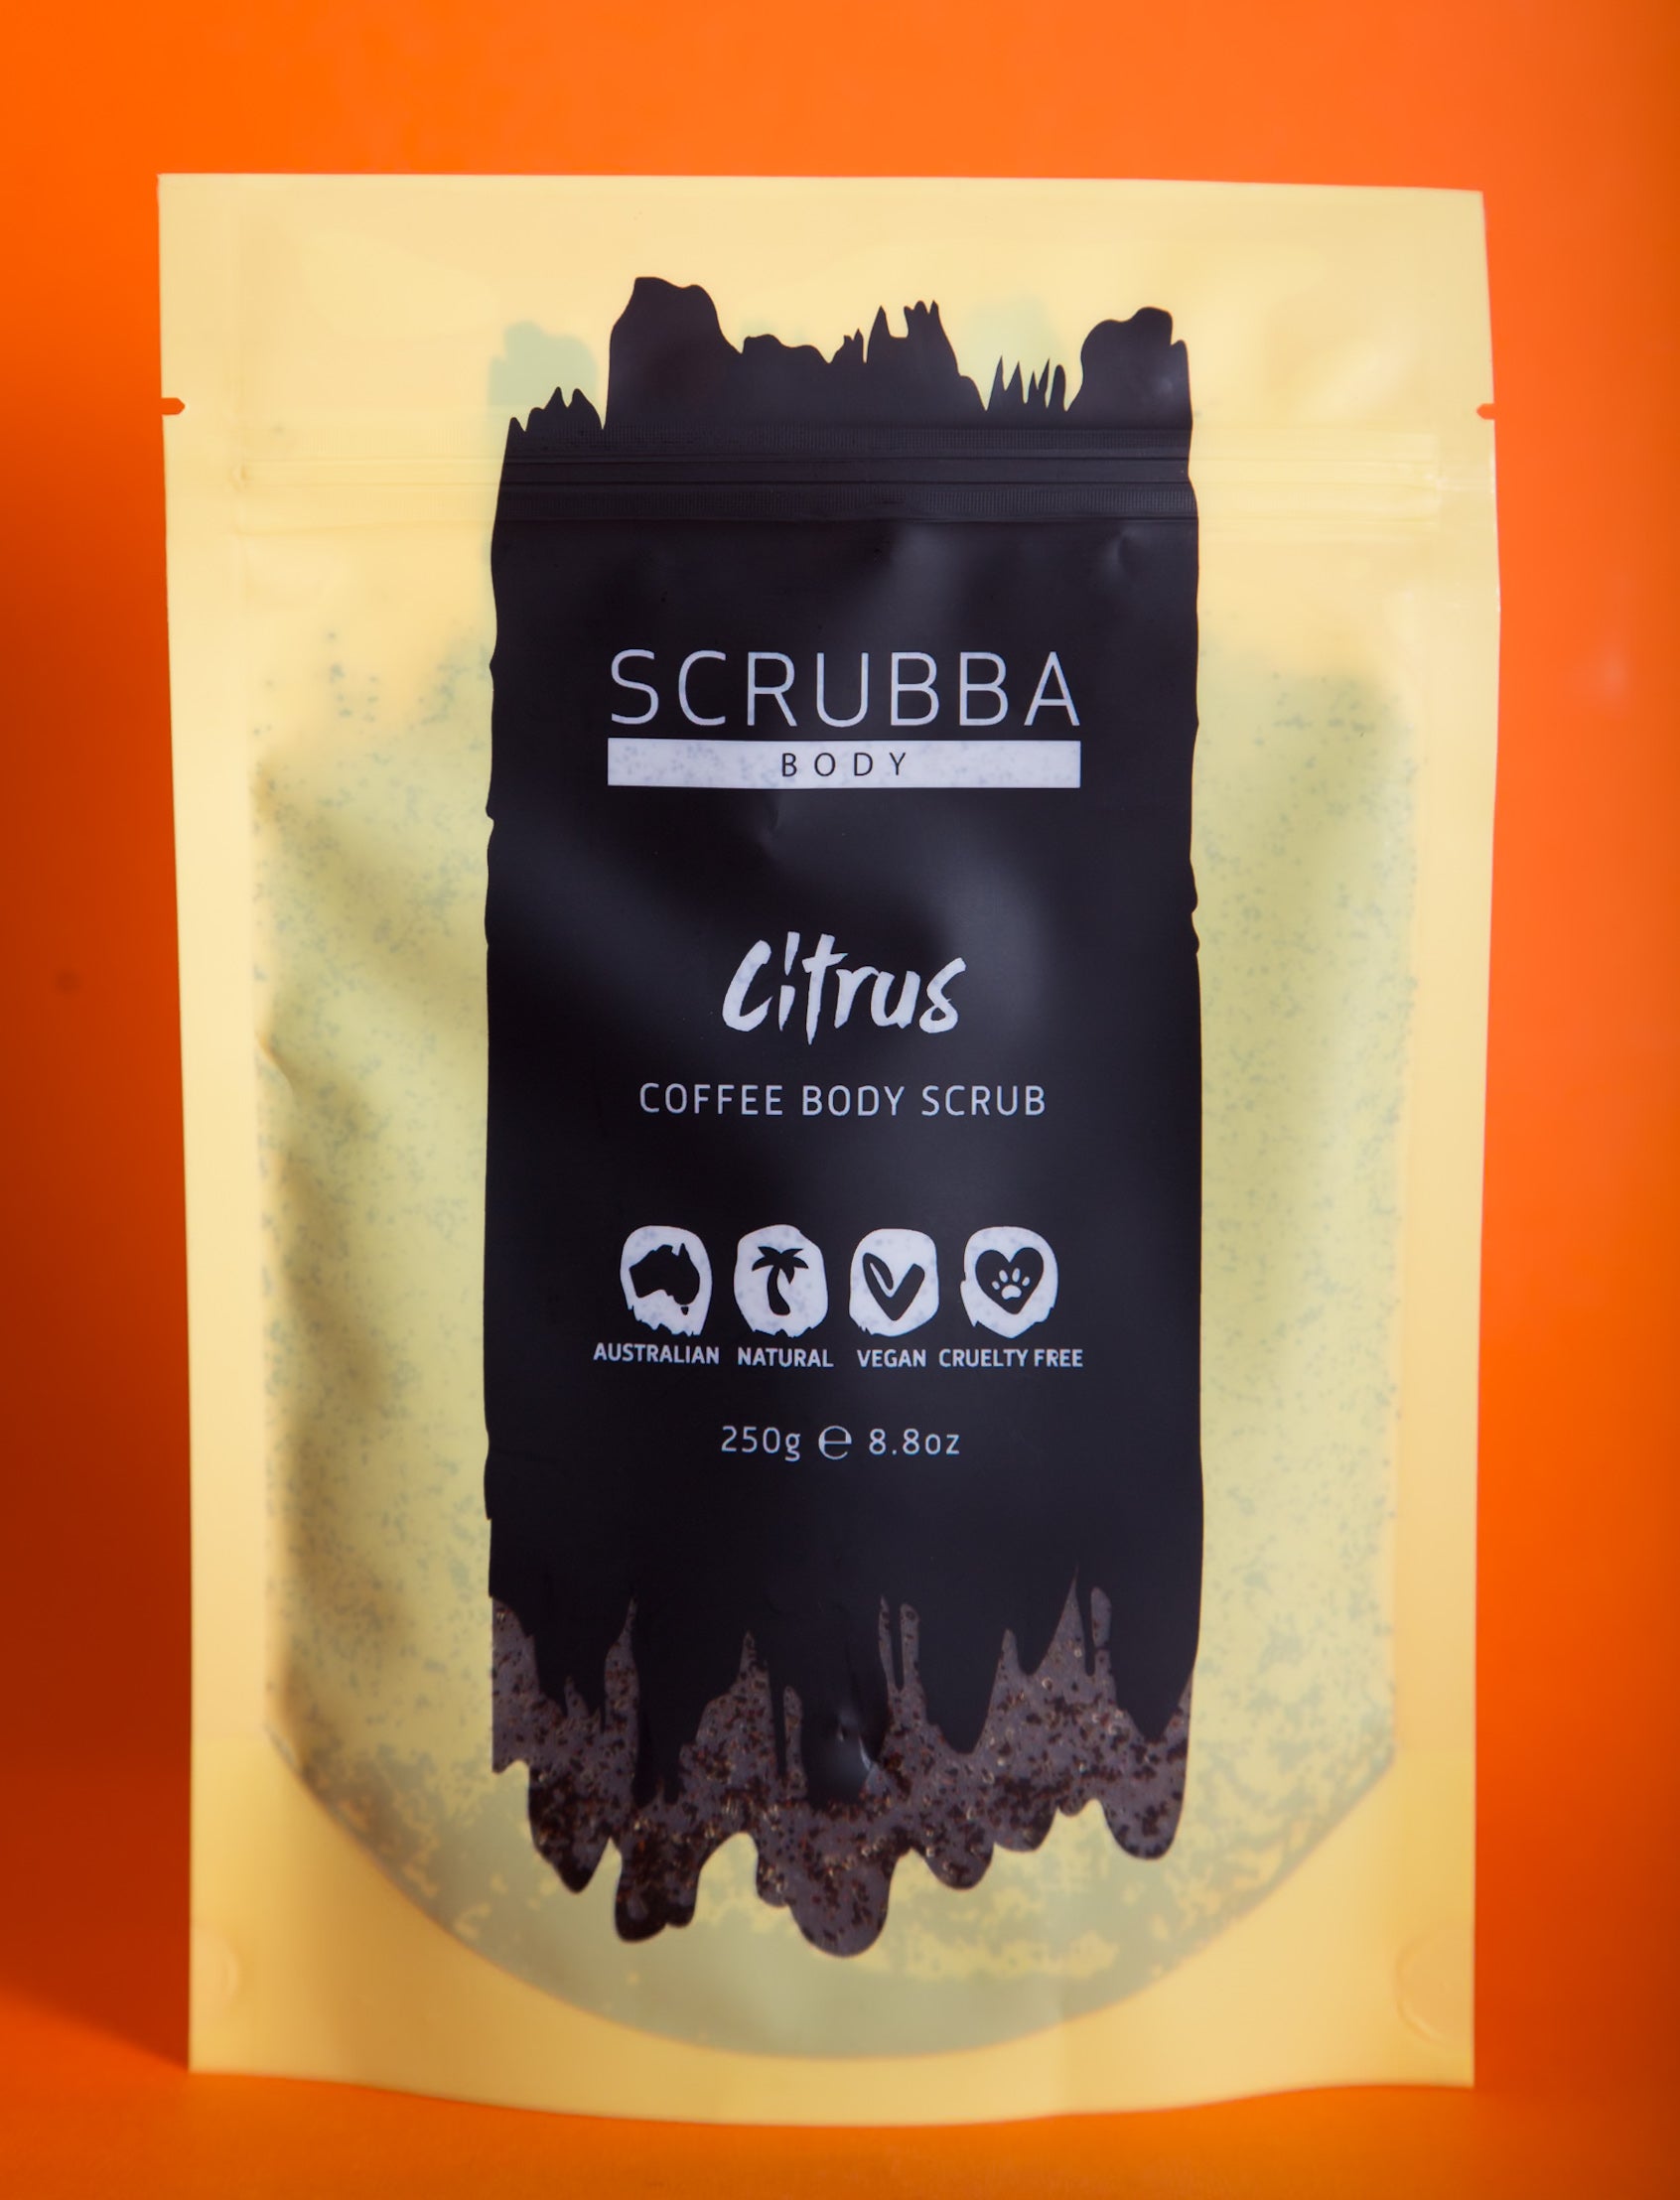 Scrubba Body Coffee Scrub Citrus & Arabica Coffee Body Scrub